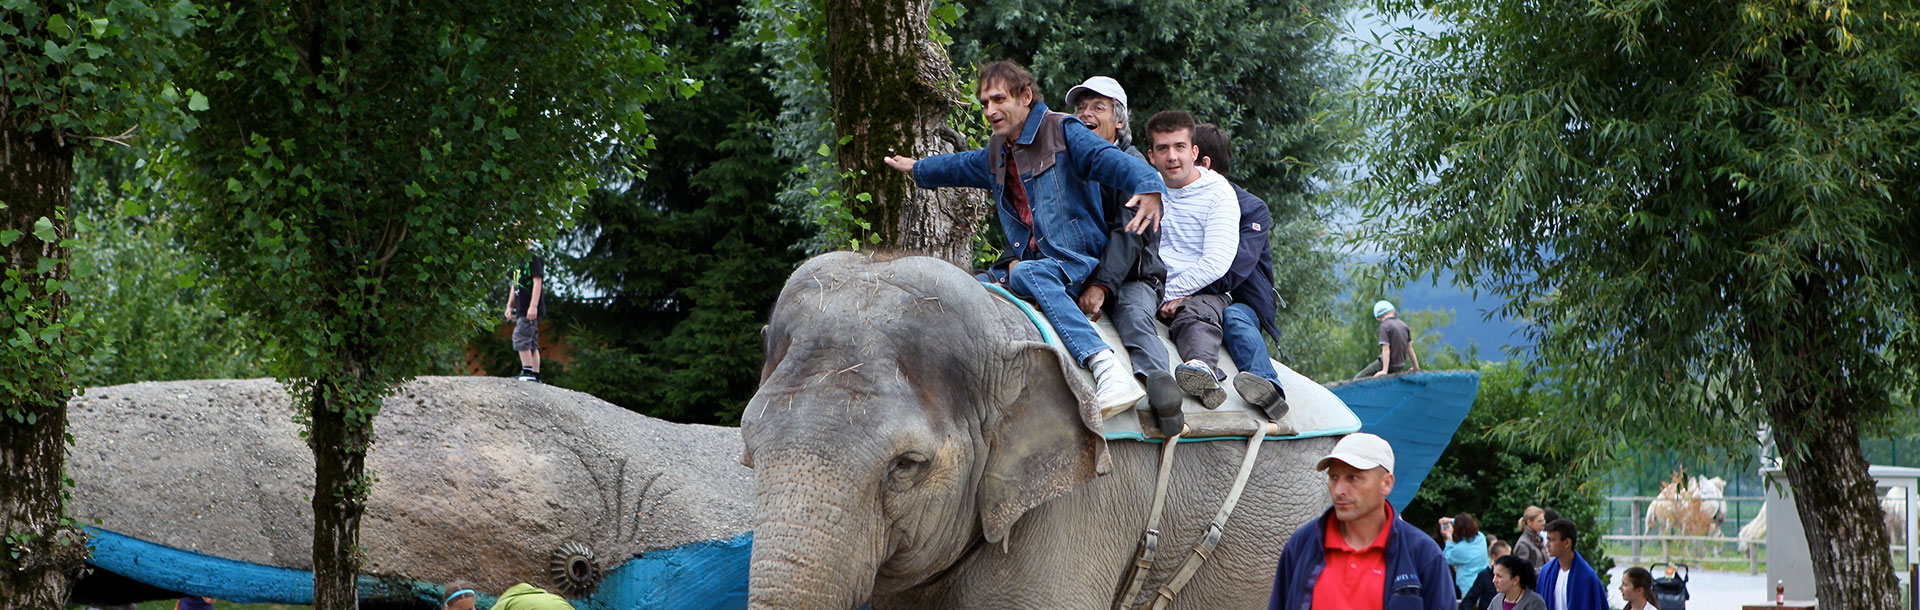 Bewohner reiten auf einem Elefanten im Zoo in Rapperswil